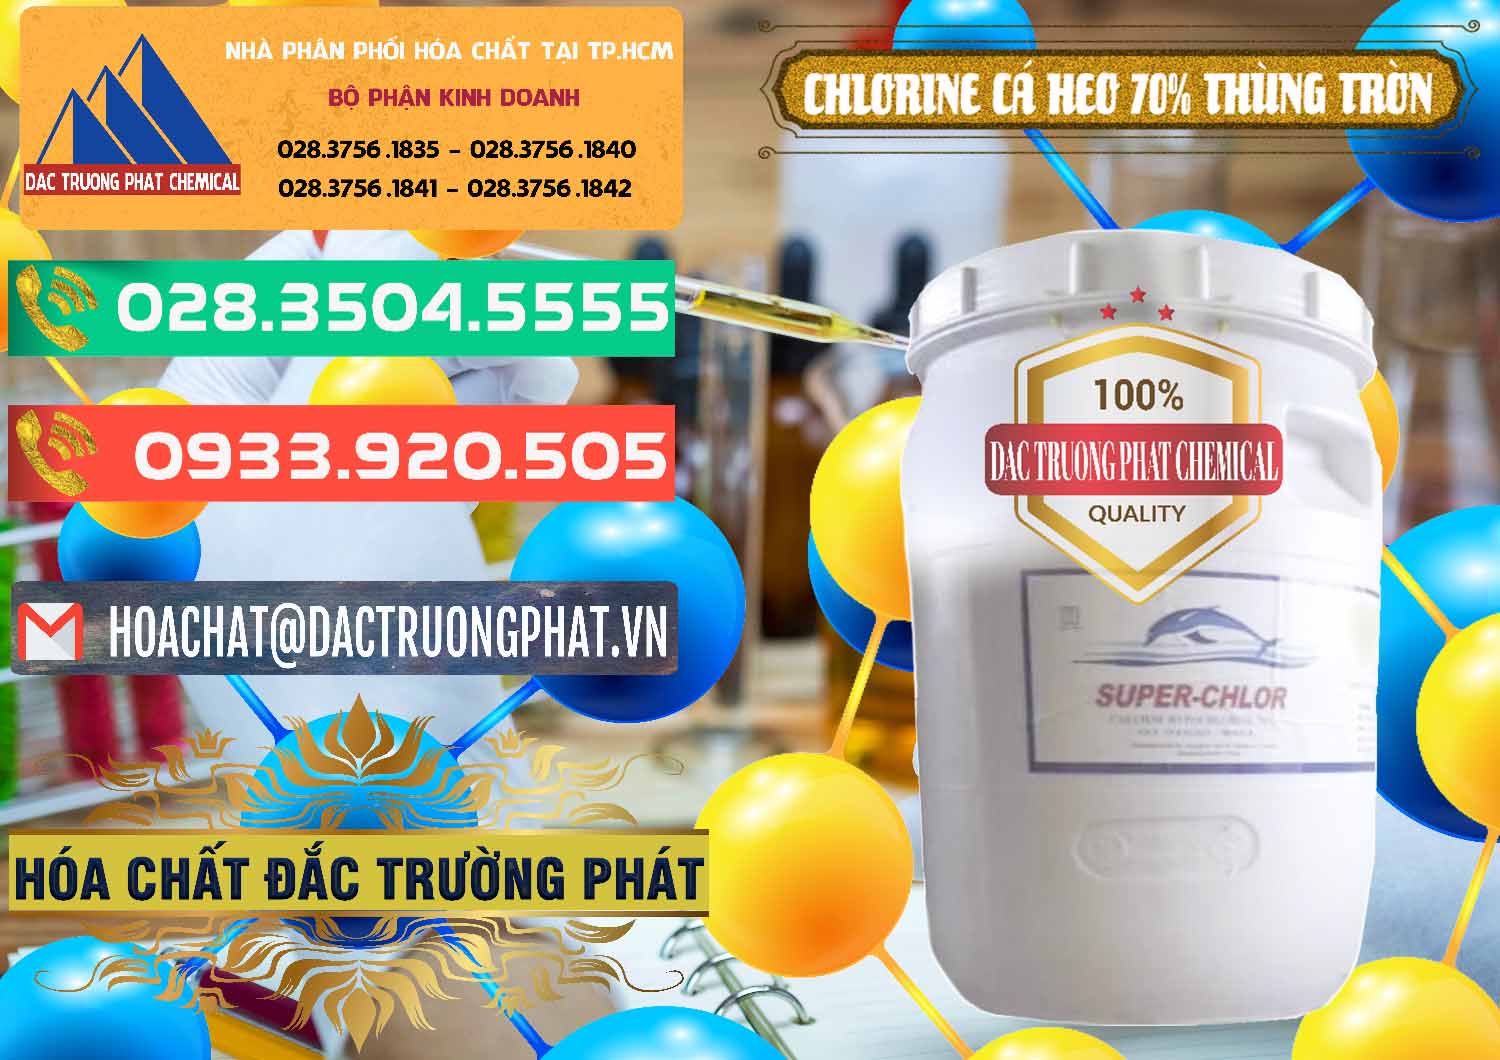 Nơi cung cấp và bán Clorin - Chlorine Cá Heo 70% Super Chlor Thùng Tròn Nắp Trắng Trung Quốc China - 0239 - Công ty cung cấp & nhập khẩu hóa chất tại TP.HCM - congtyhoachat.com.vn